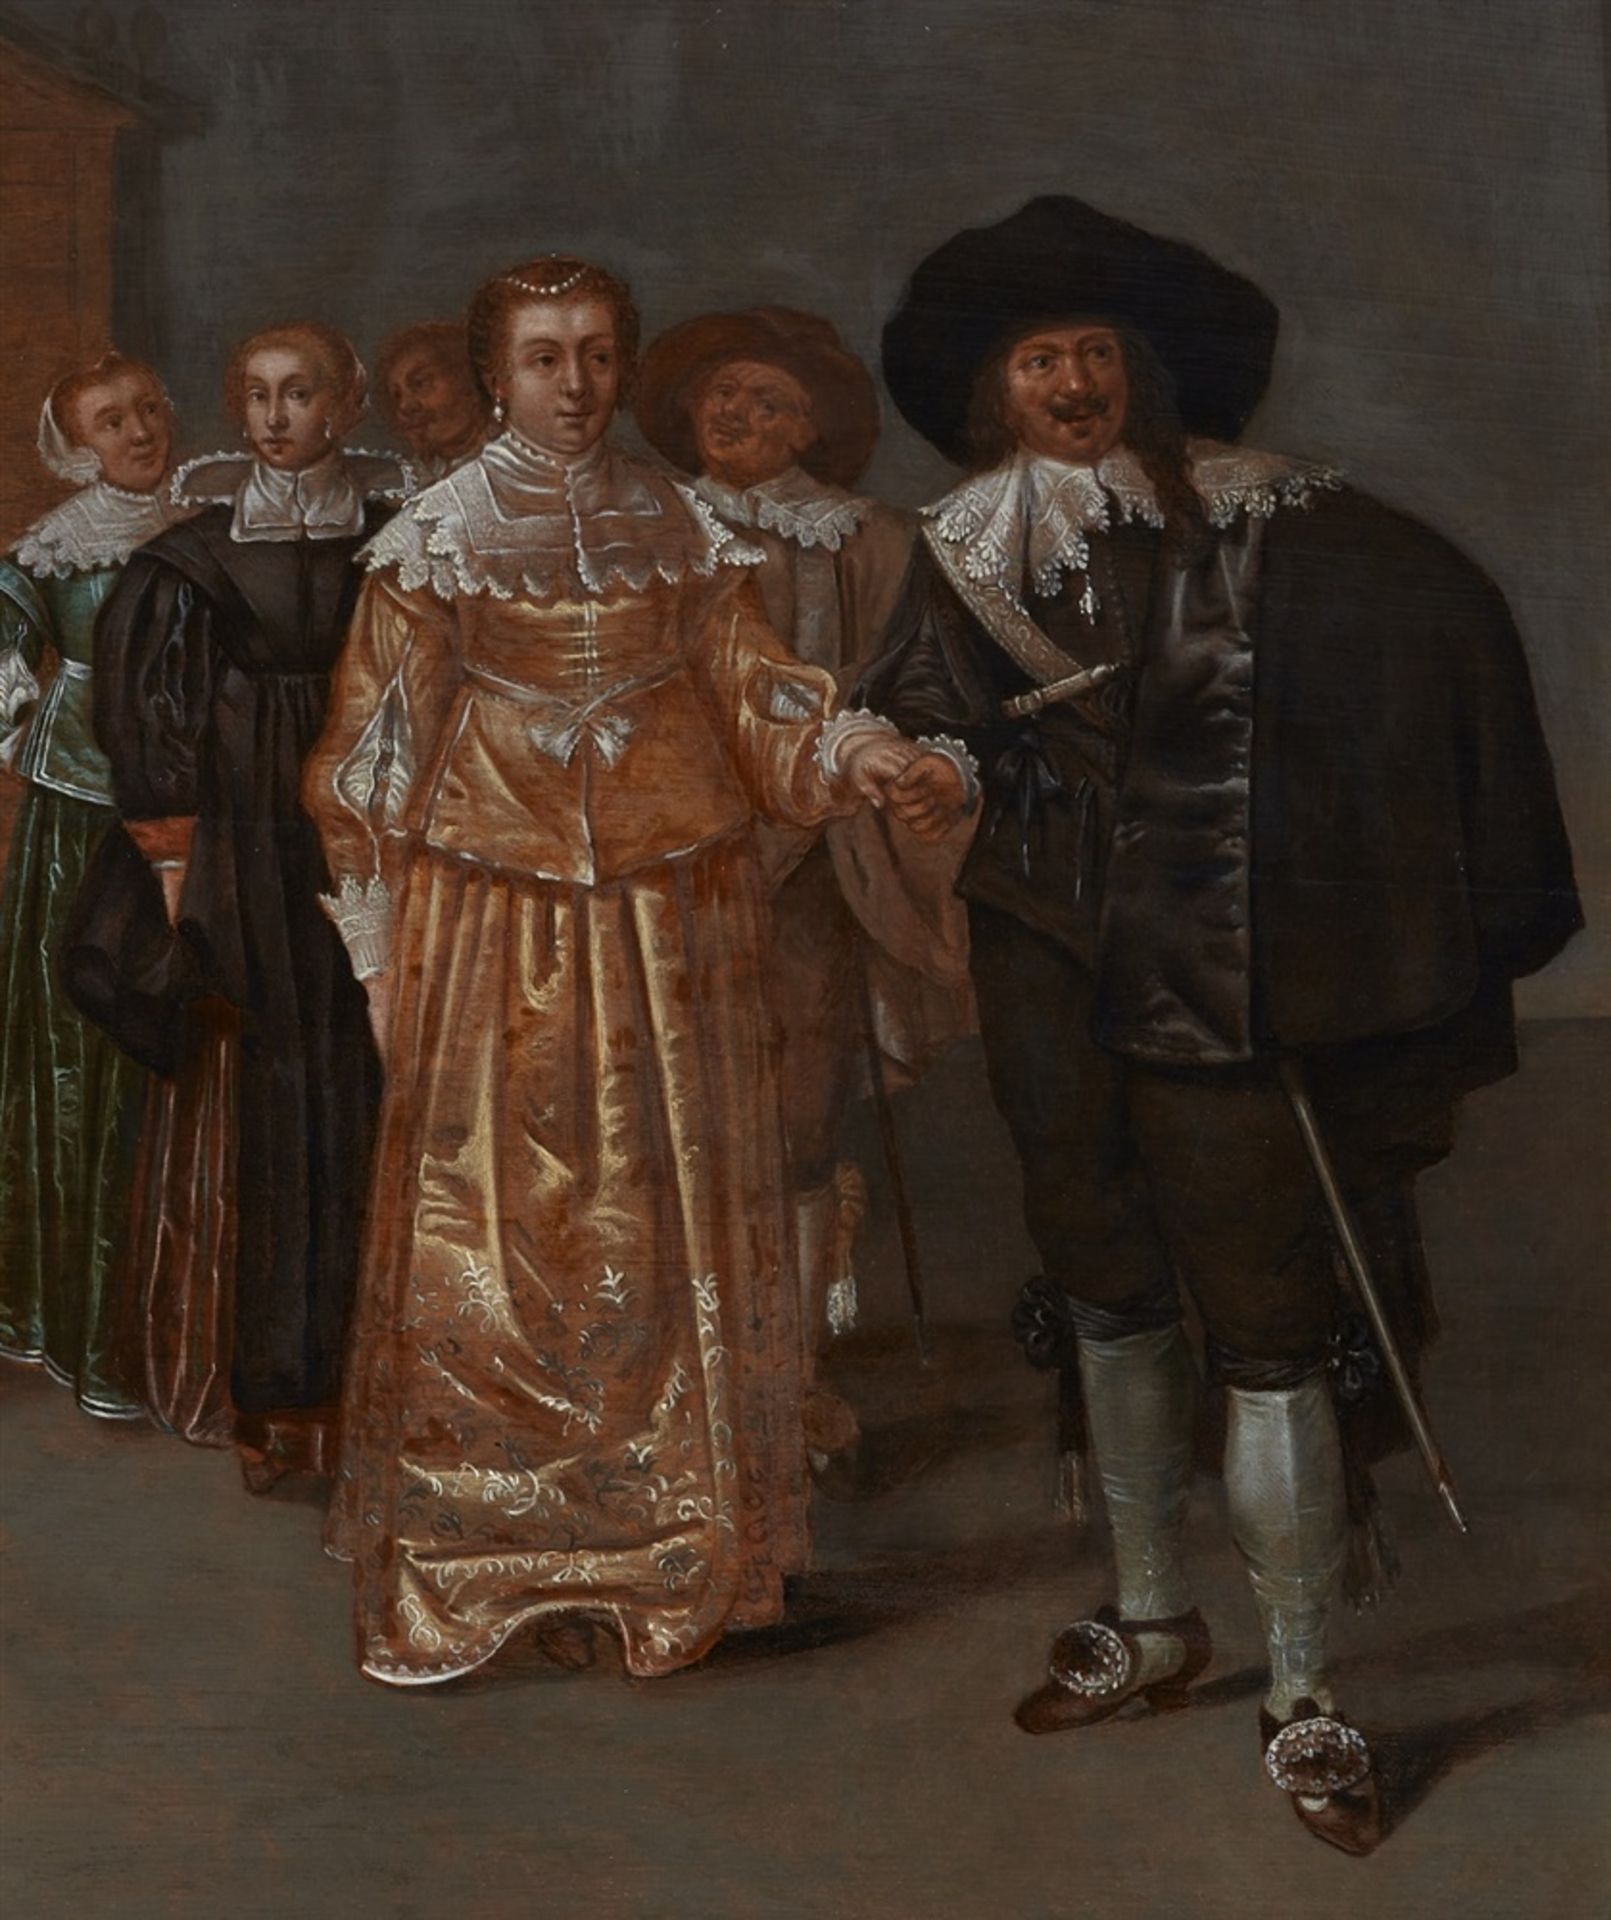 Niederländischer Meister des 17. JahrhundertsDie Vorstellung der Braut